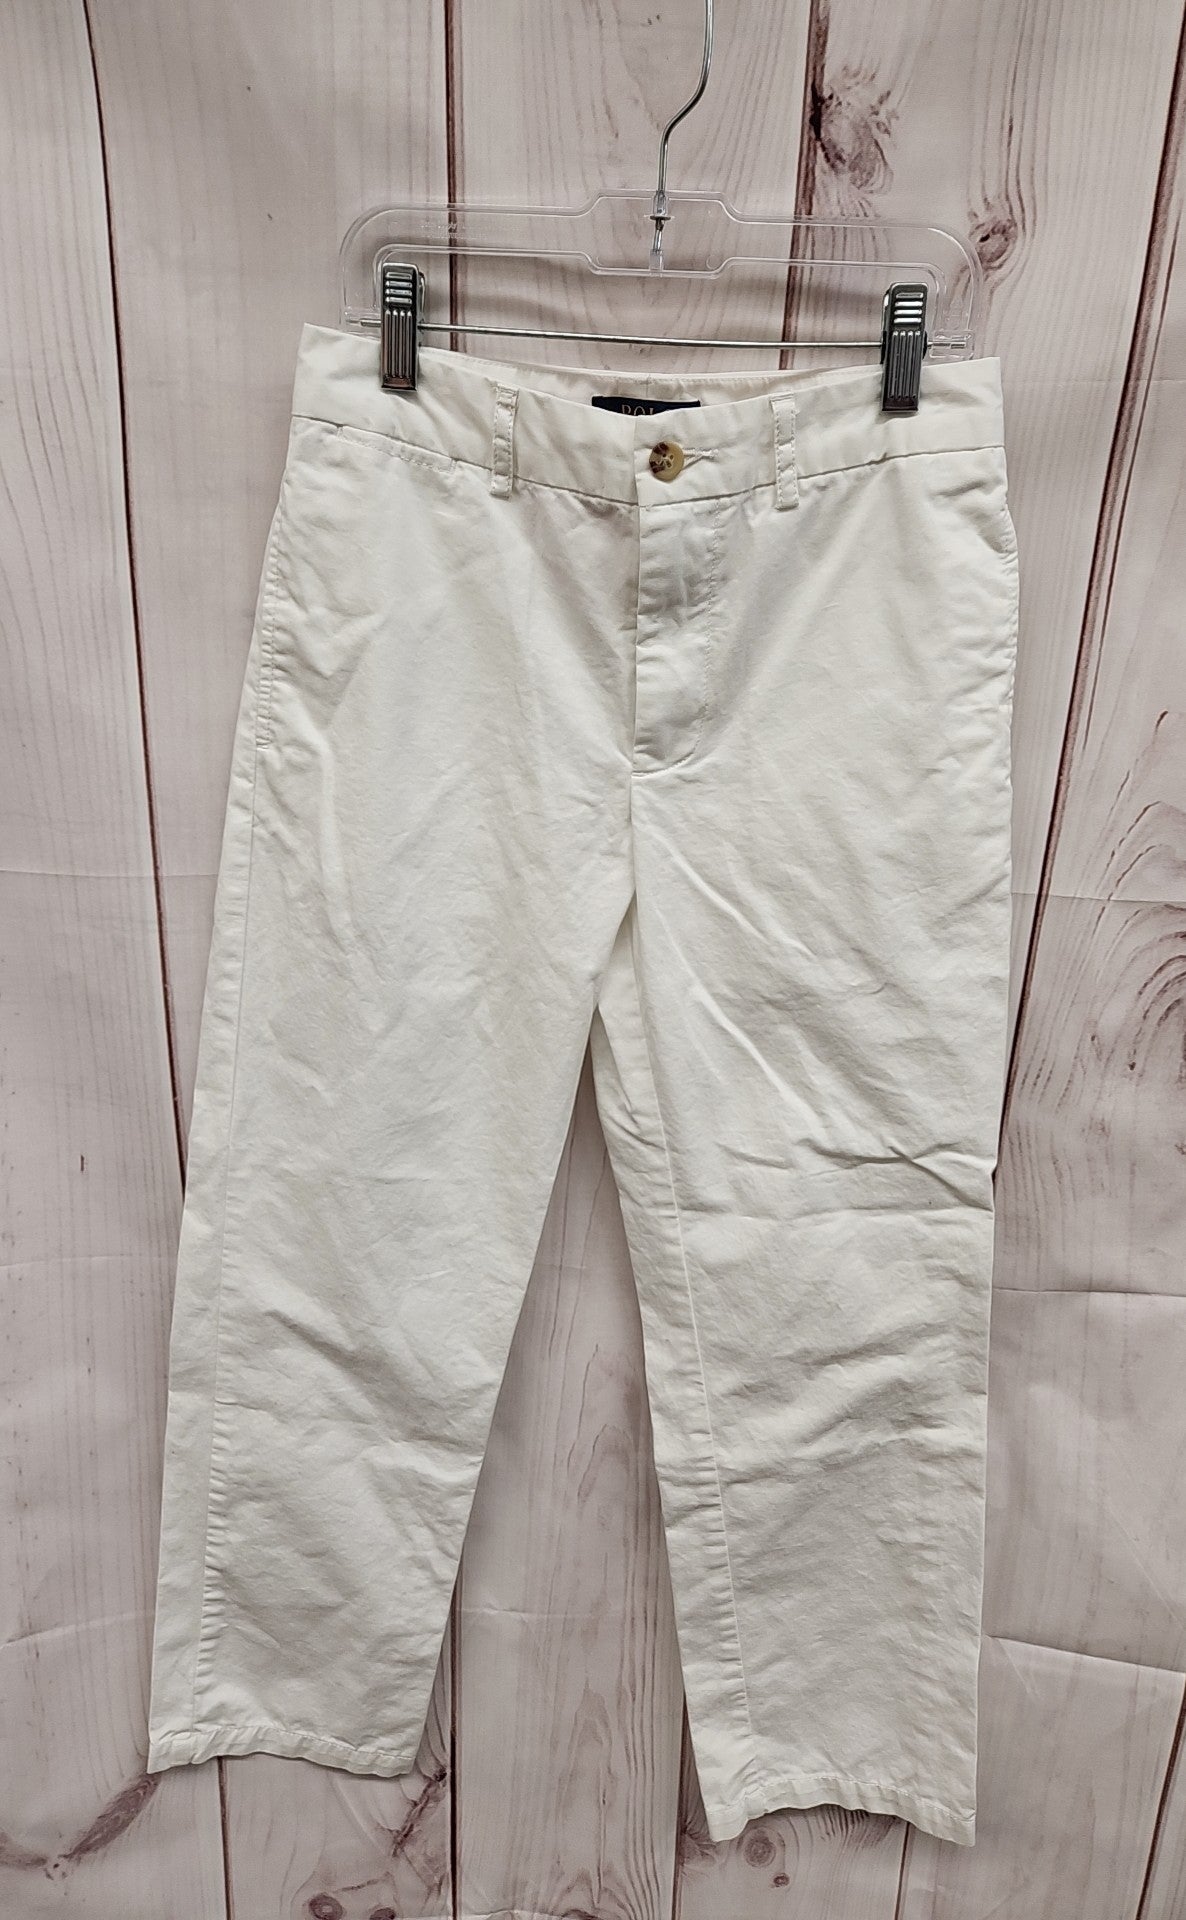 Polo by Ralph Lauren Boy's Size 12 White Pants